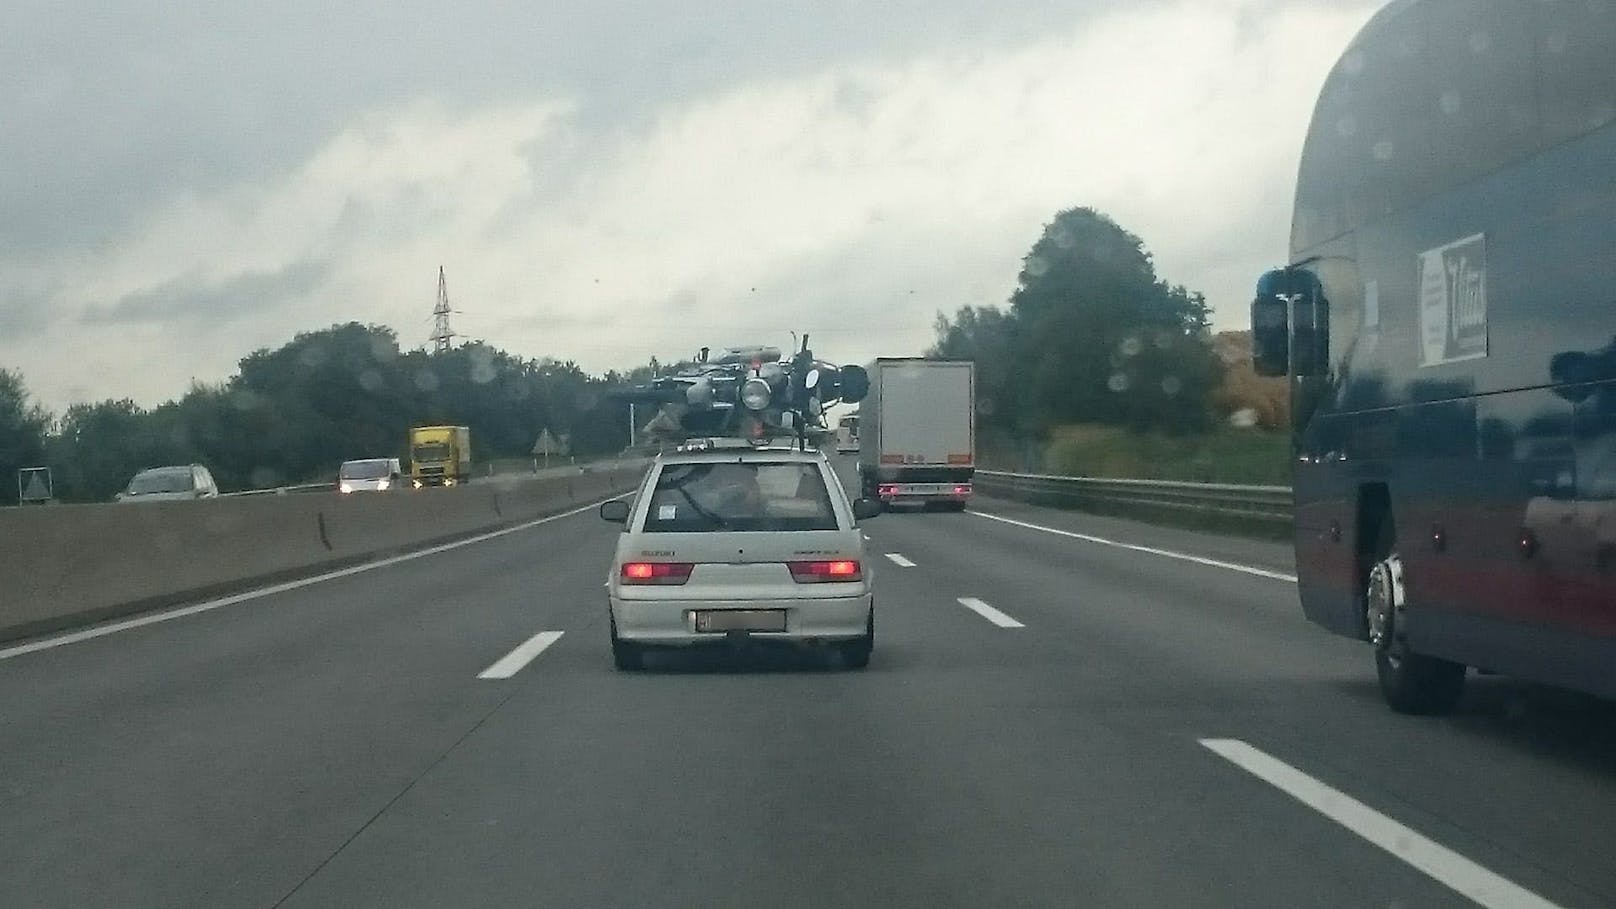 Bitte nicht nachmachen: Motorrad-Transport auf dem Dach eines Autos